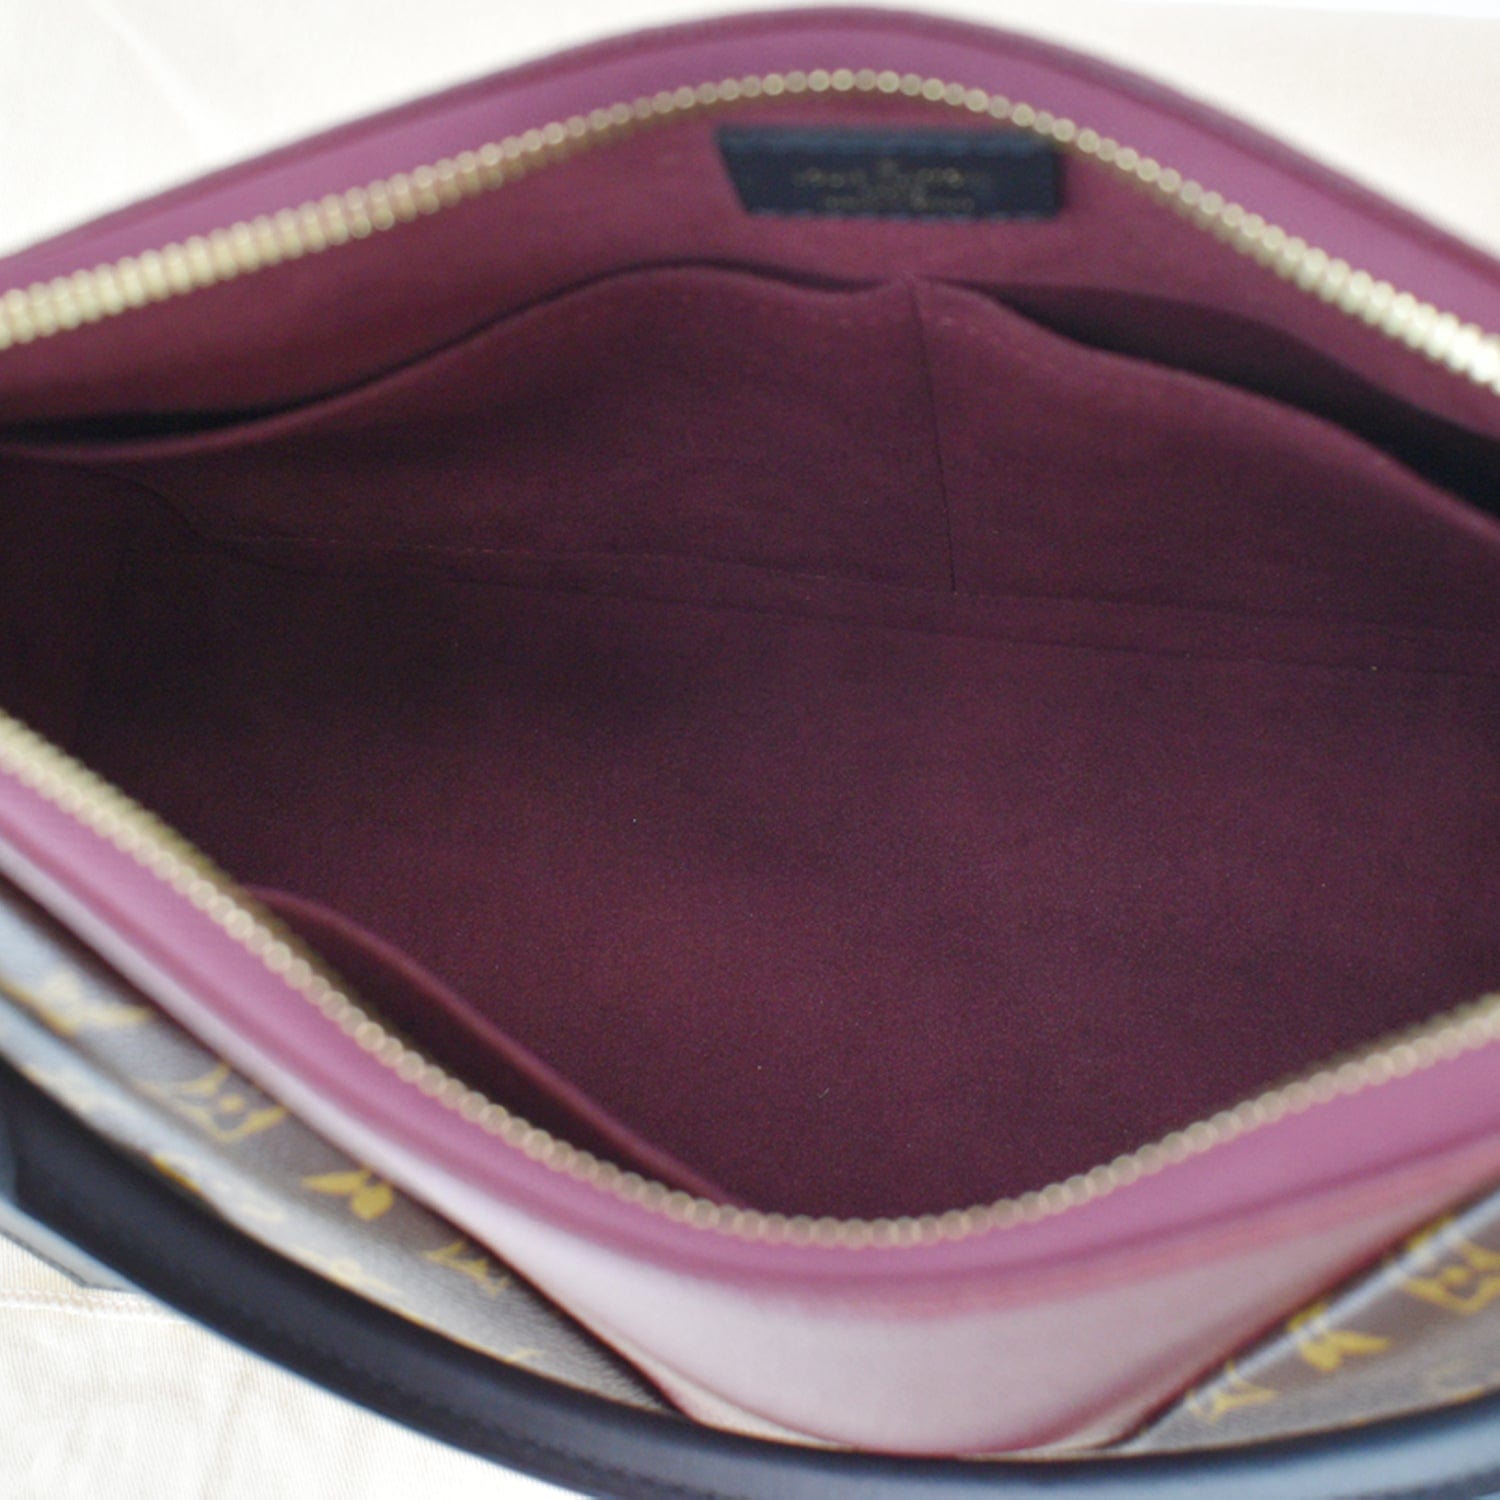 Louis Vuitton LV GHW V Tote MM 2 Way Shoulder Bag M43949 Monogram Brown  Bordeaux